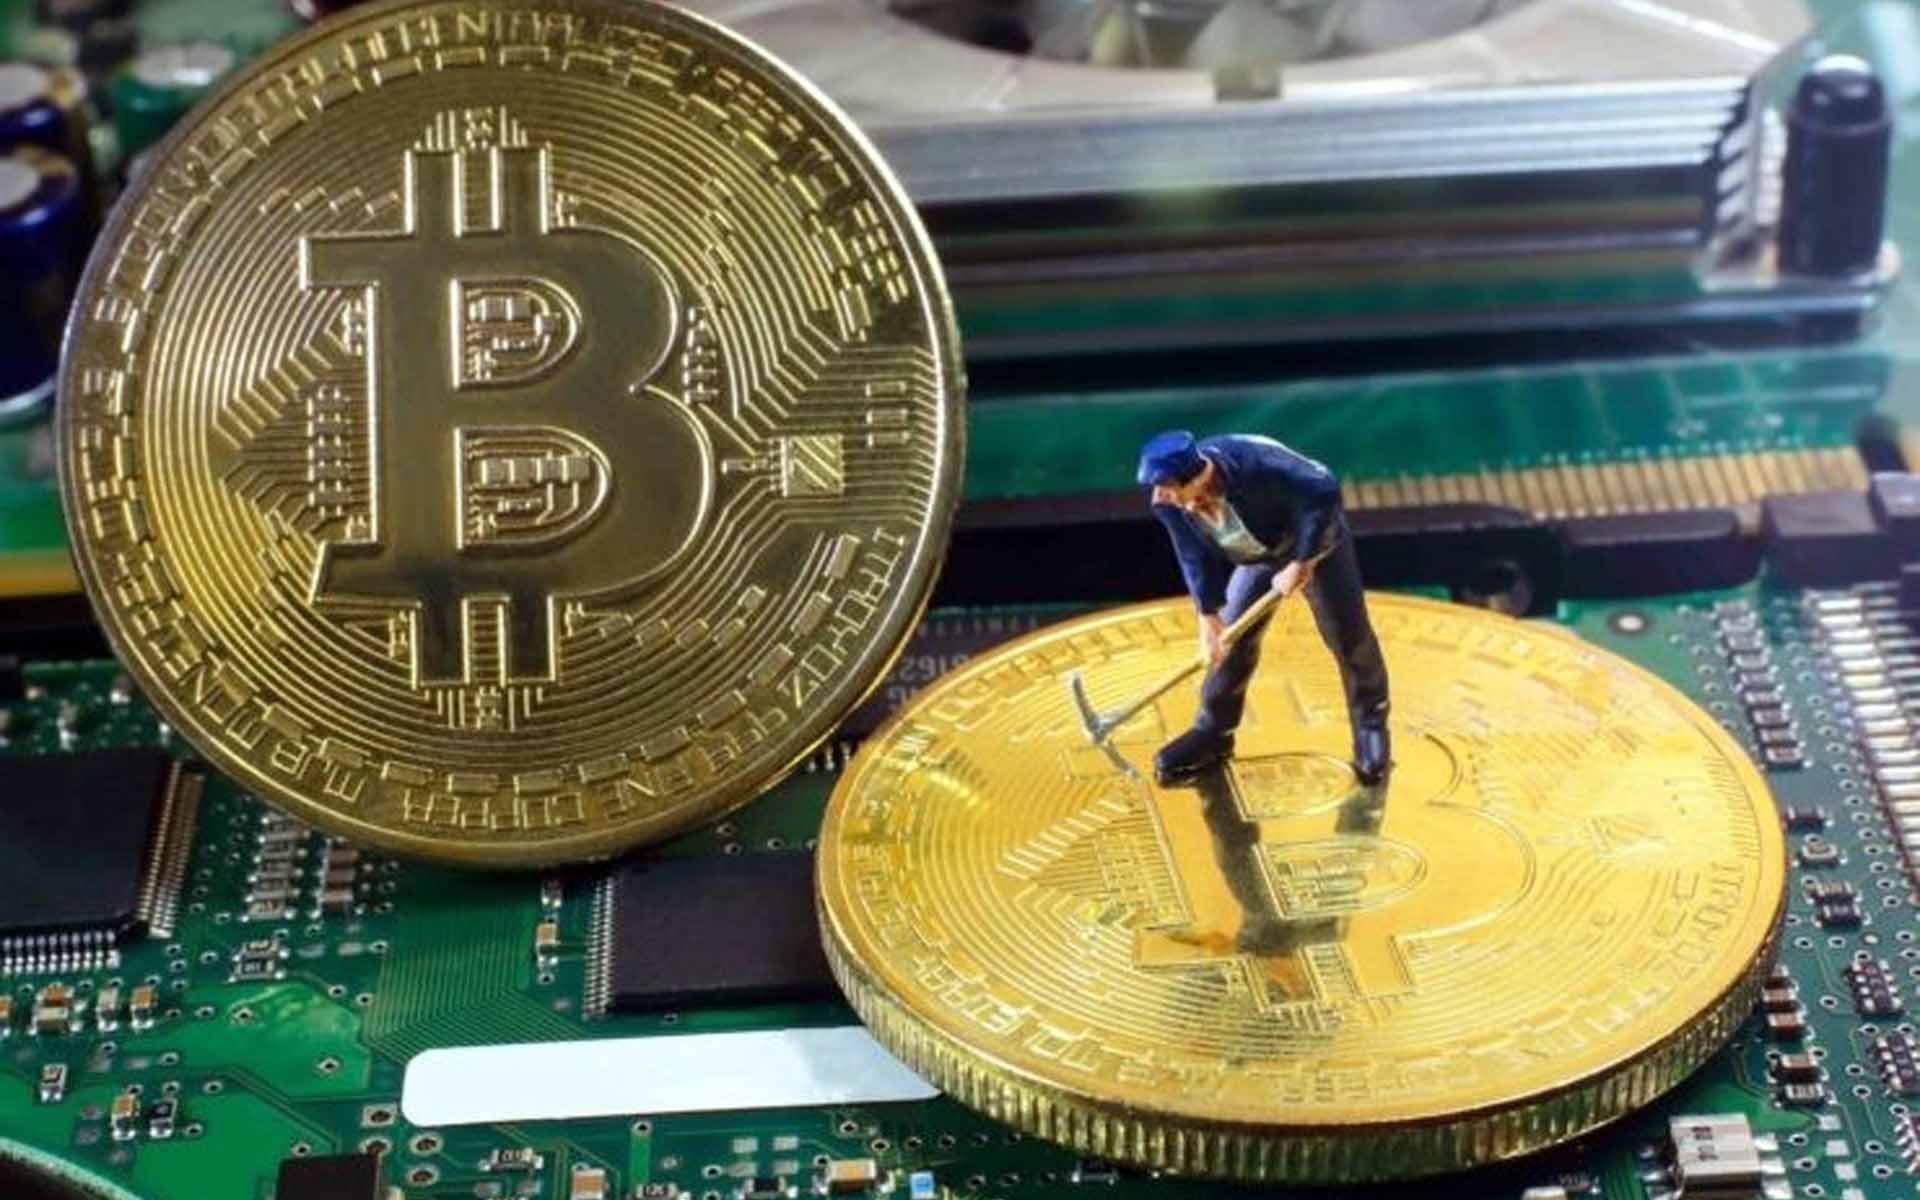 alamat ensbury kalteng mining bitcoins